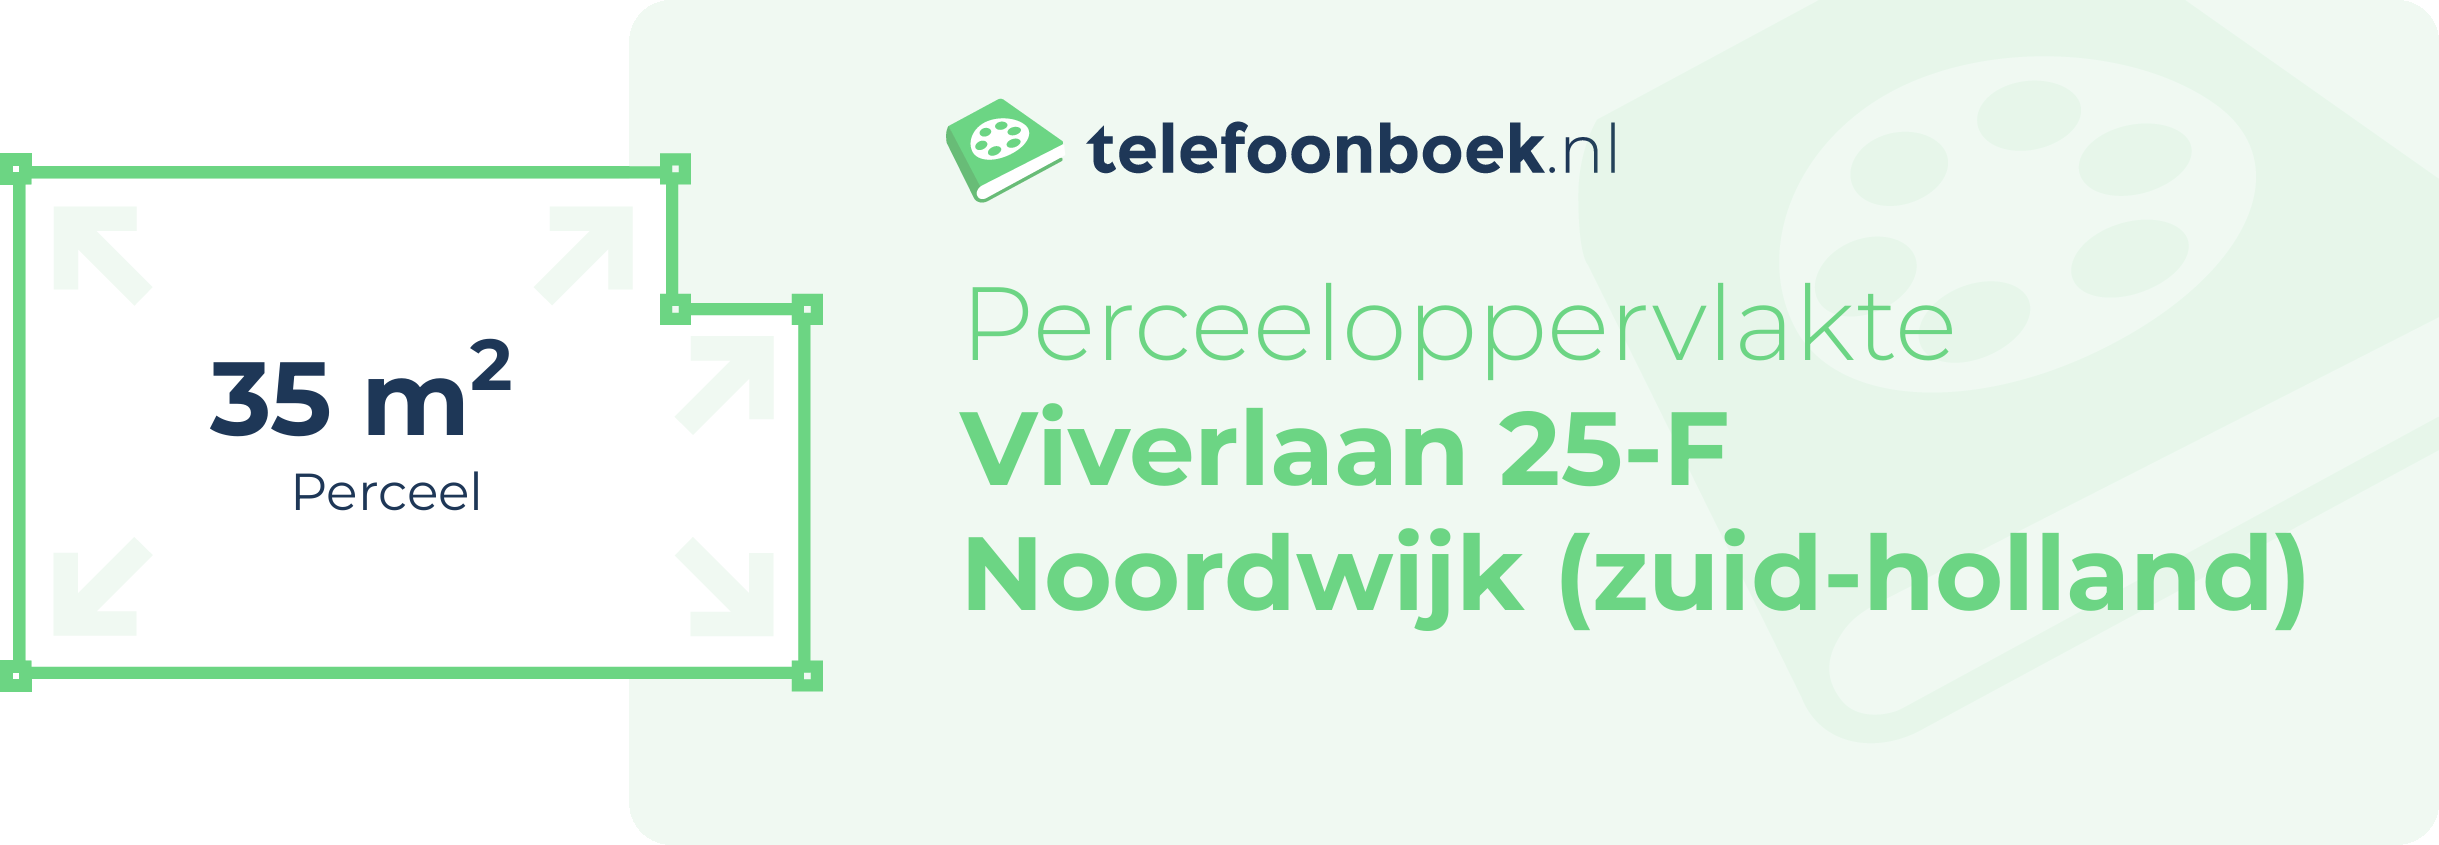 Perceeloppervlakte Viverlaan 25-F Noordwijk (Zuid-Holland)